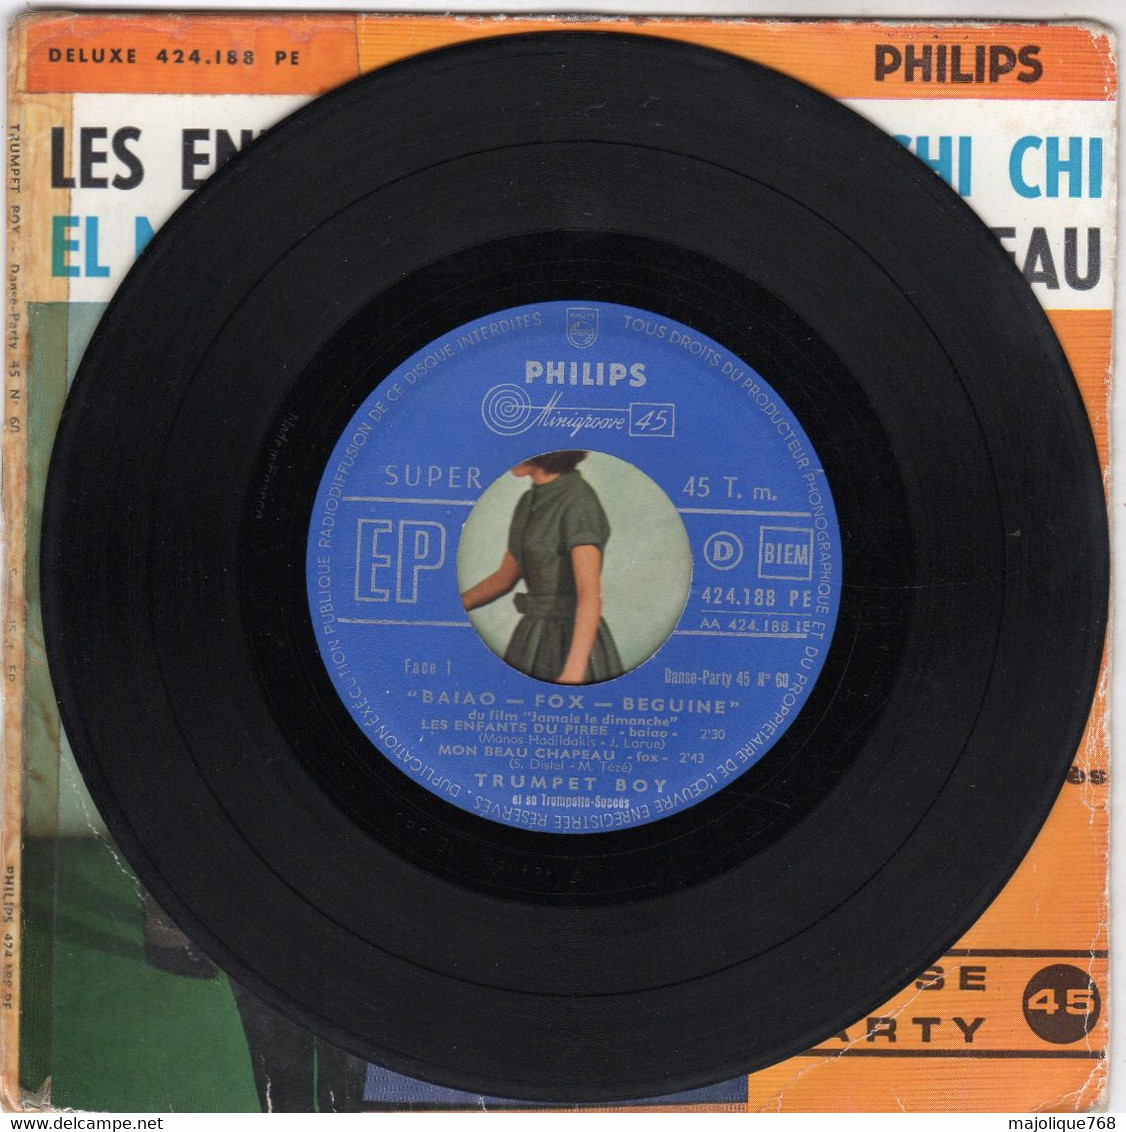 Disque - Trumpet Boy Et Sa Trumpette Succès - Baiao-fox-beguine  - Philips 424.188 PE - France 1960 - - Jazz